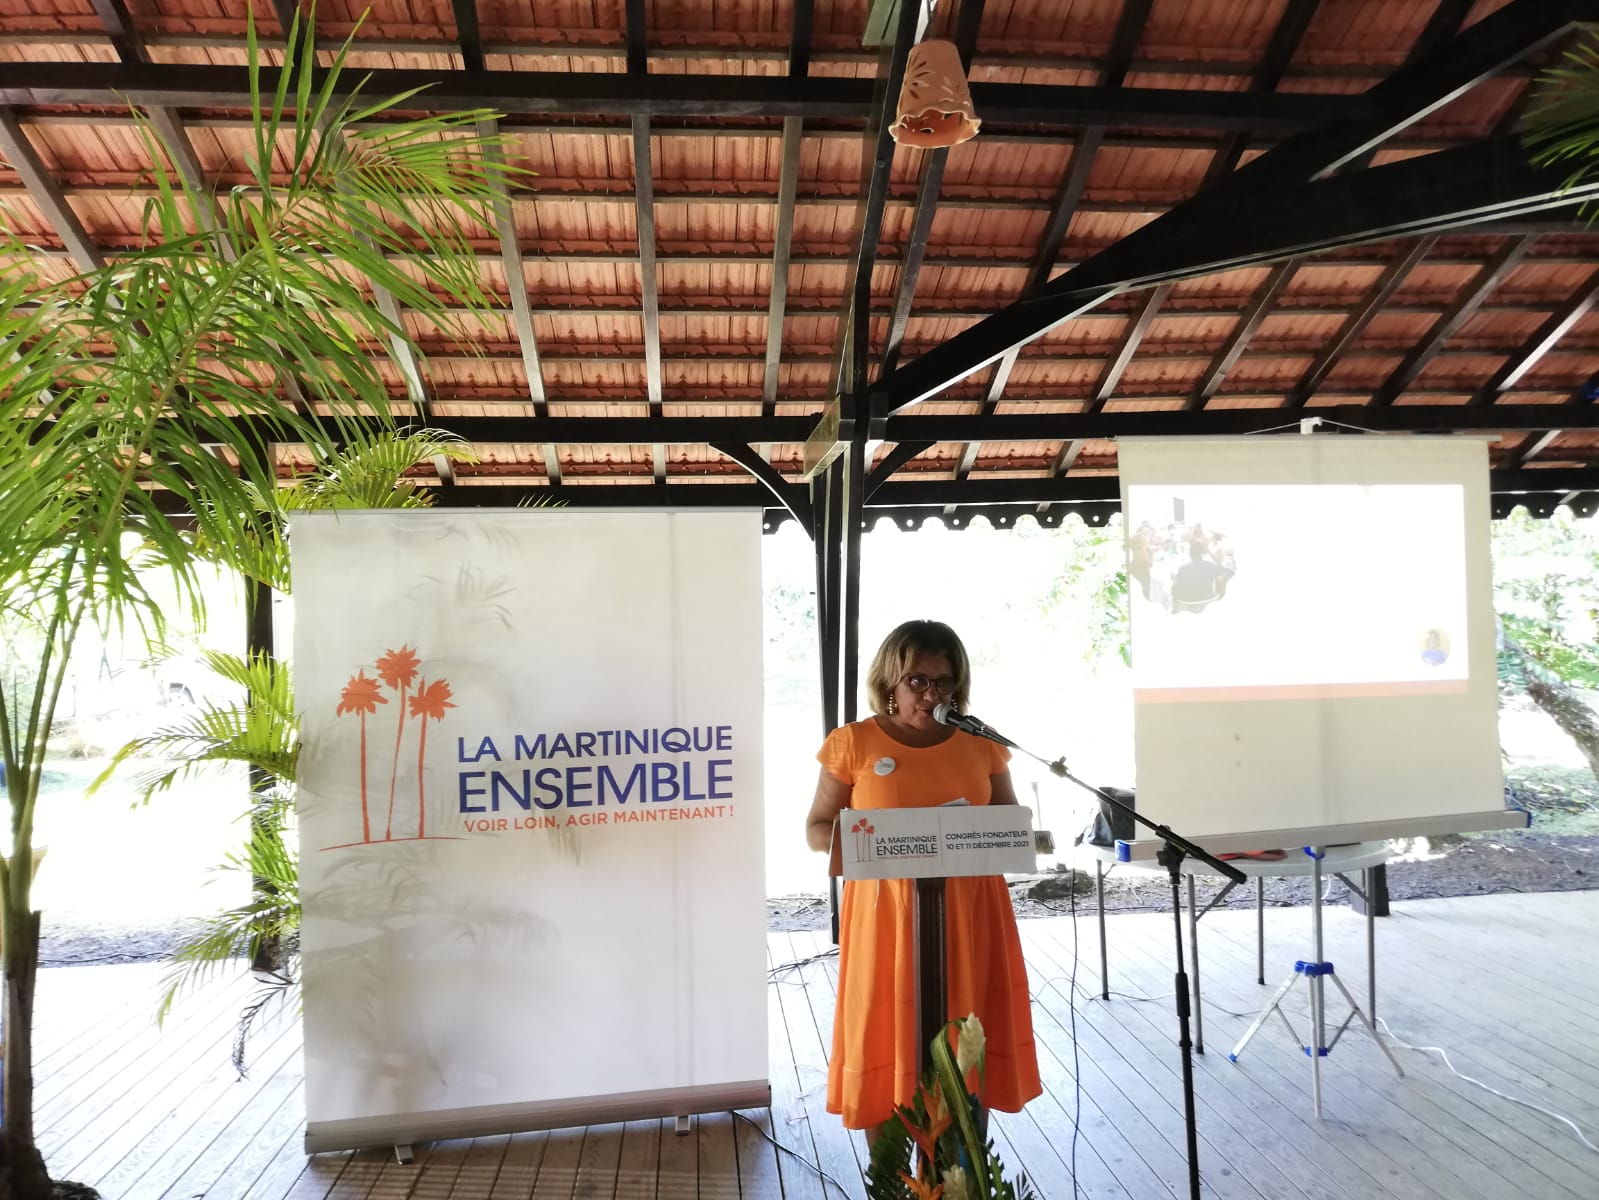     "La Martinique Ensemble" fait ses propositions aux candidats à la présidentielle

